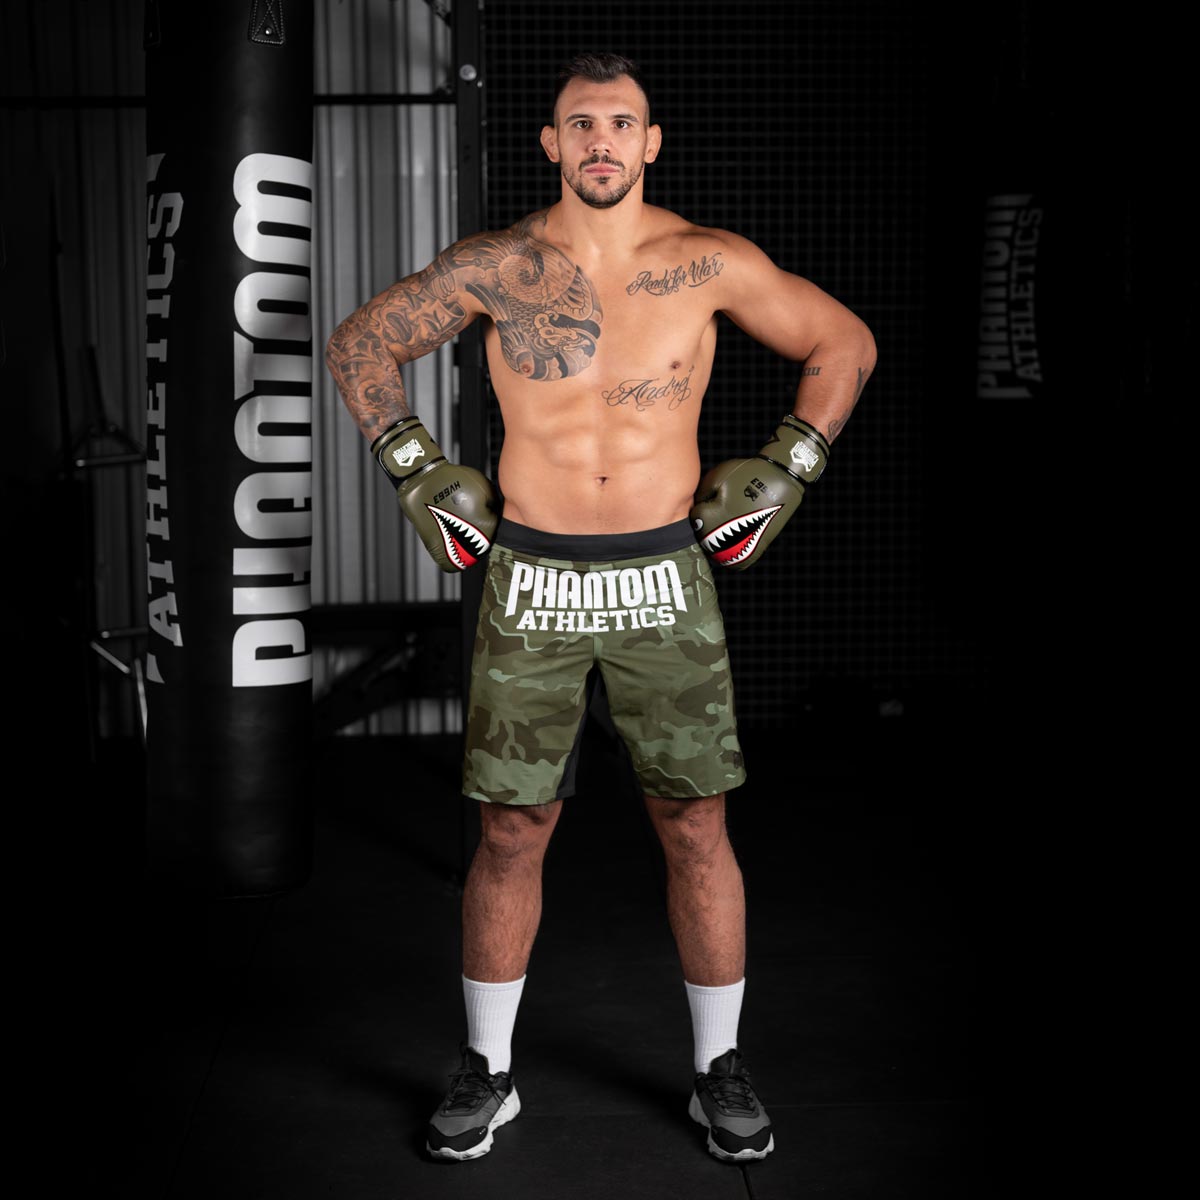 UFC Star Aleks Rakic beim Training im Gym mit den Phantom Fight Squad Boxhandschuhen in Army grün.